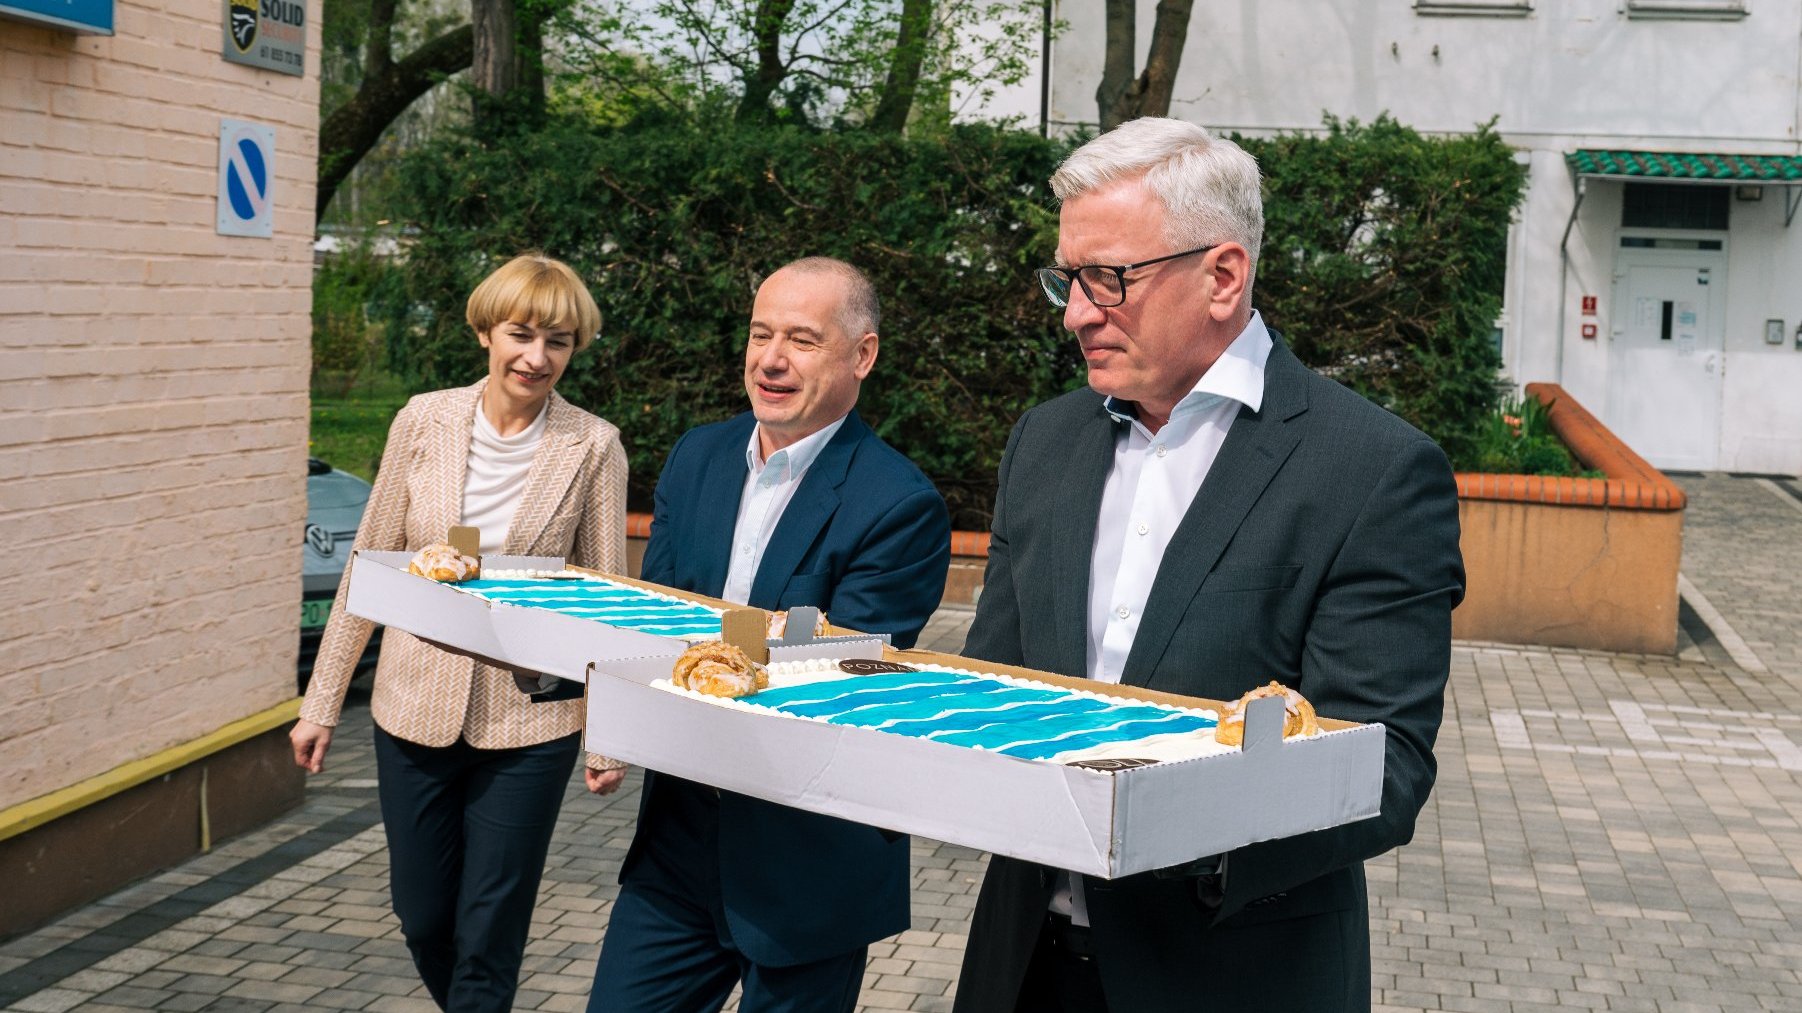 Na zdjęciu trzy osoby - w tym prezydent Poznania - niosące tort